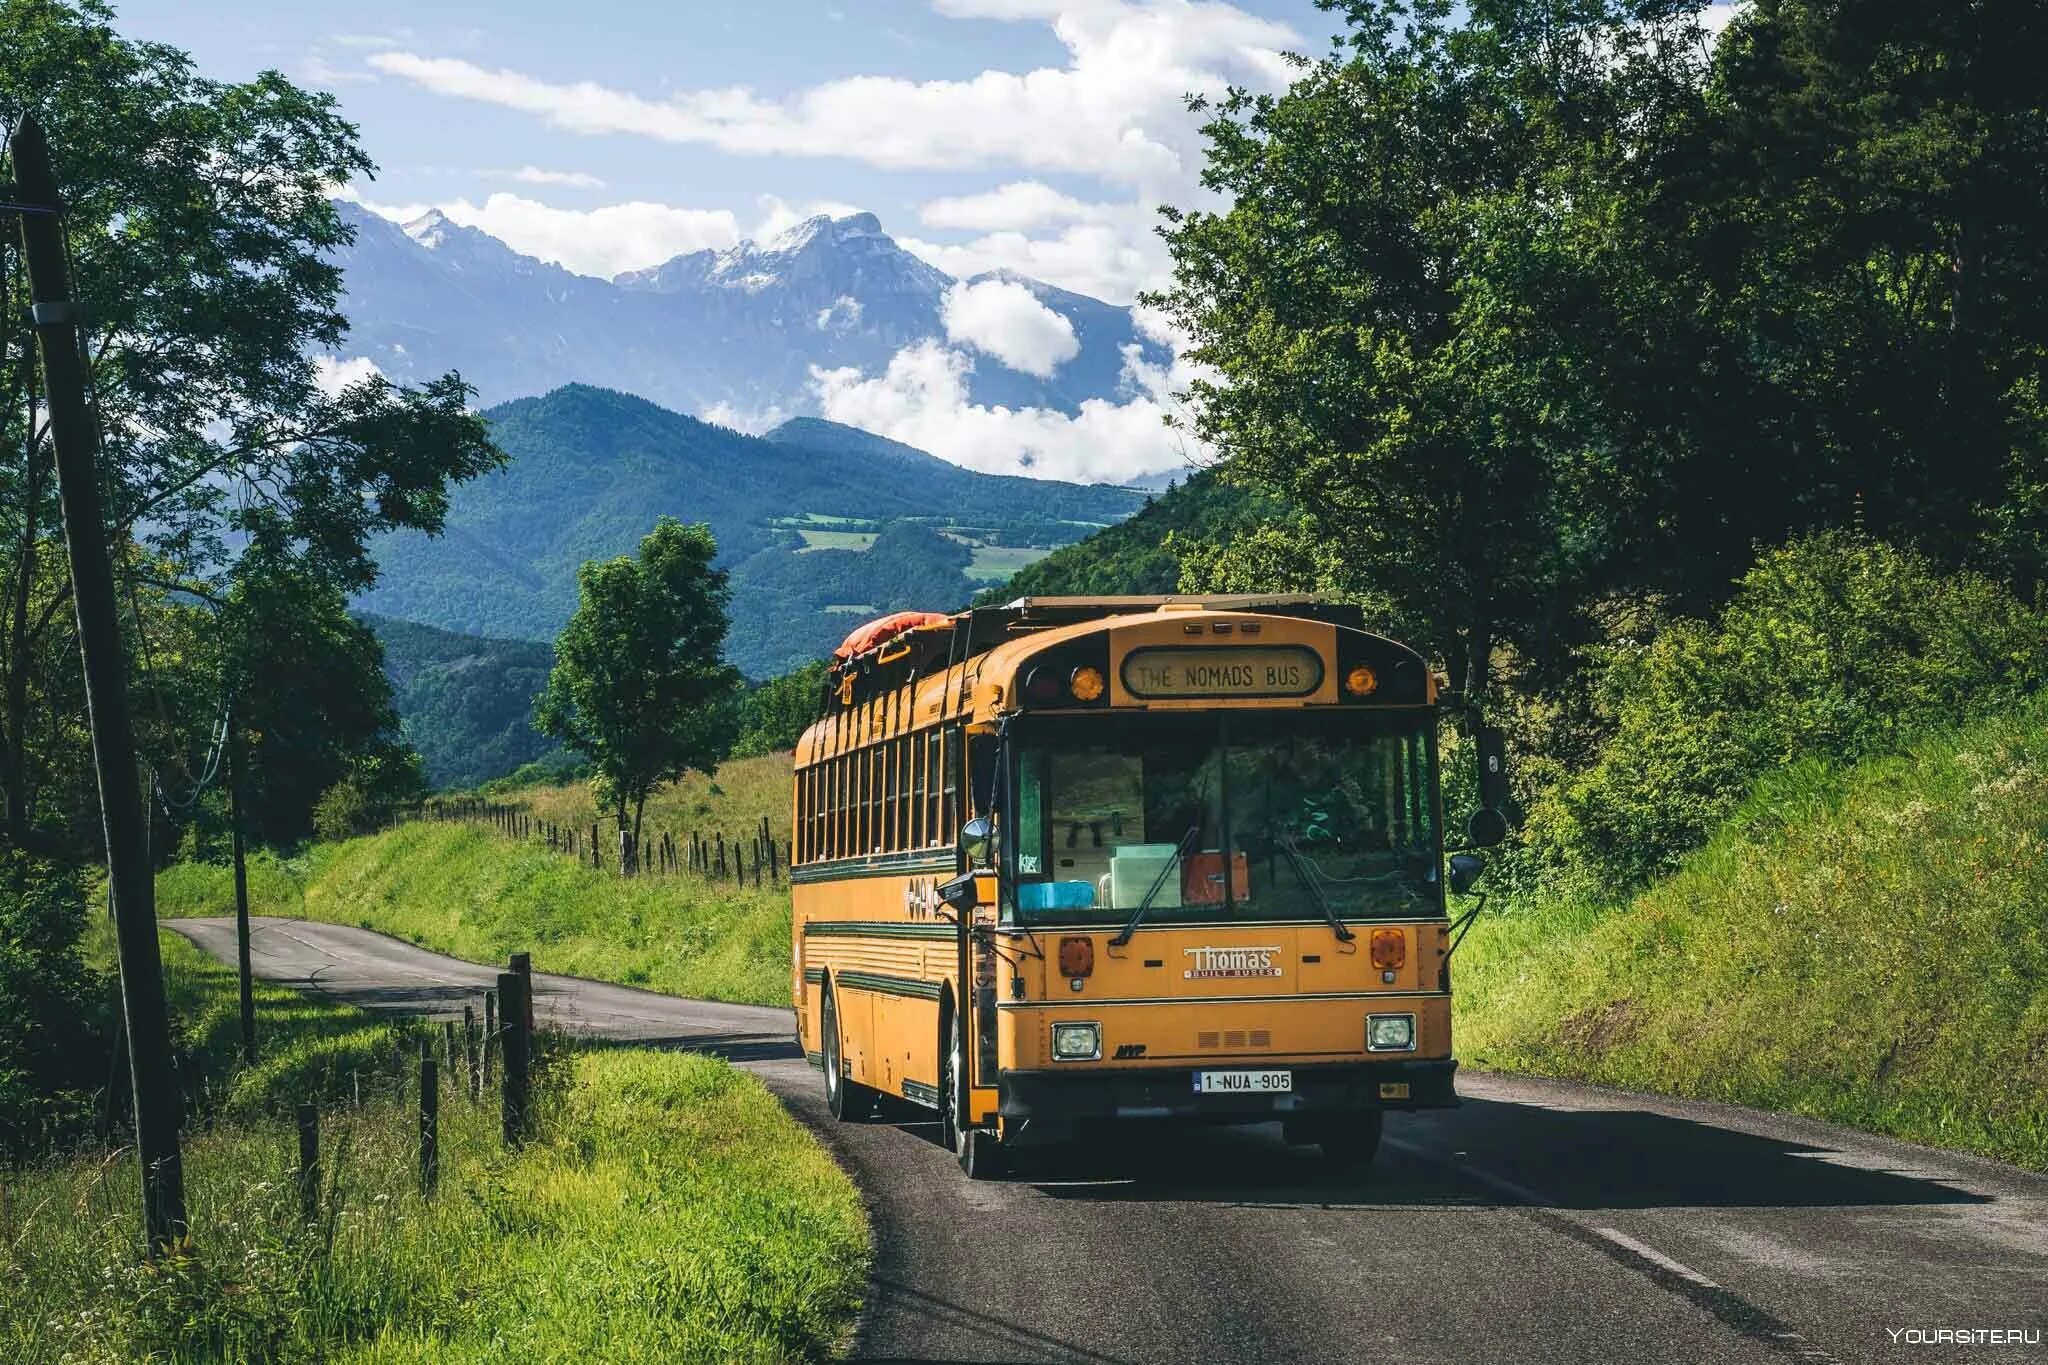 Автобус едет в горы. Автобус. Автобус в горах. Автобус на дороге. Туристический автобус в горах.